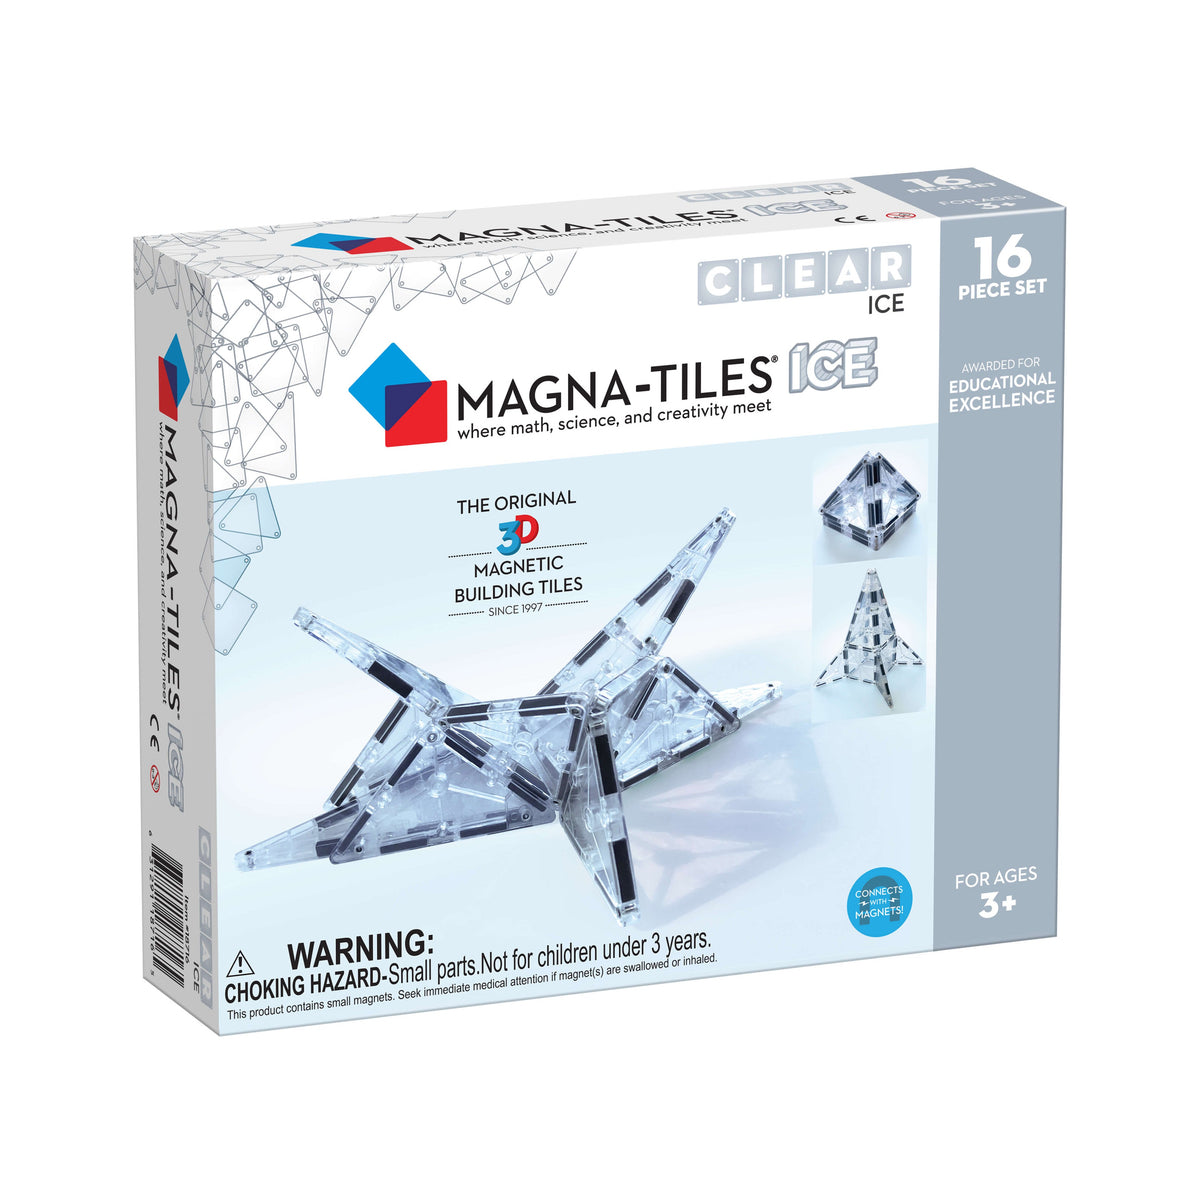 magna-tiles-tiles-ice-16-piece-set- (1)